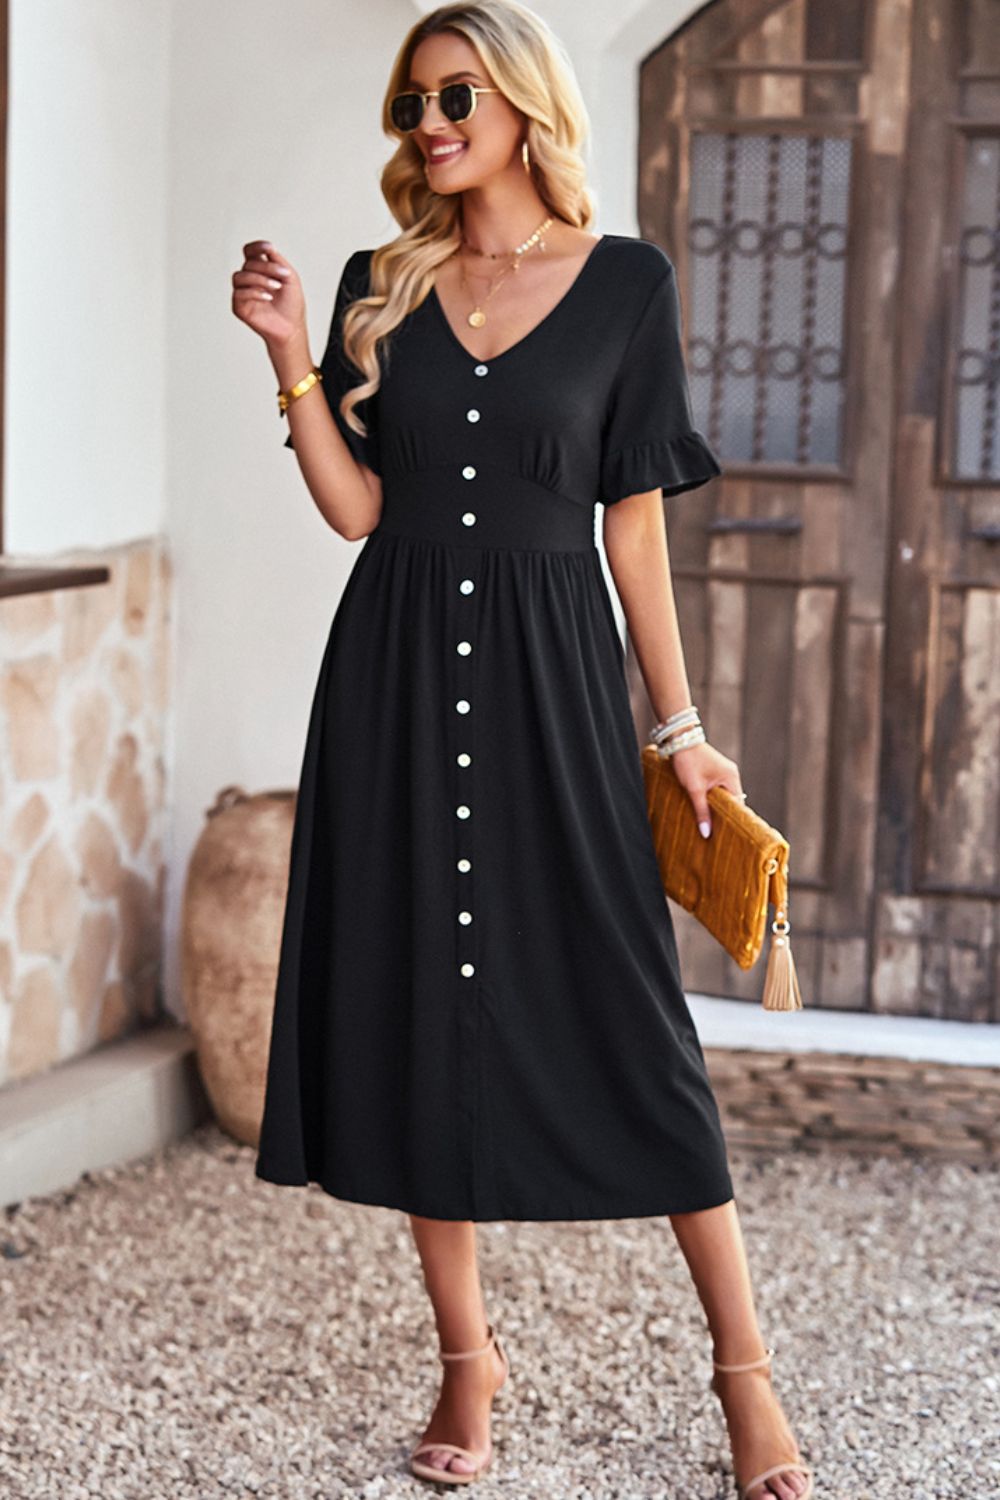 BLACK Gathered Detail Buttoned V-Neck Midi Dress - 4 colors - Women's Midi Dresses at TFC&H Co.